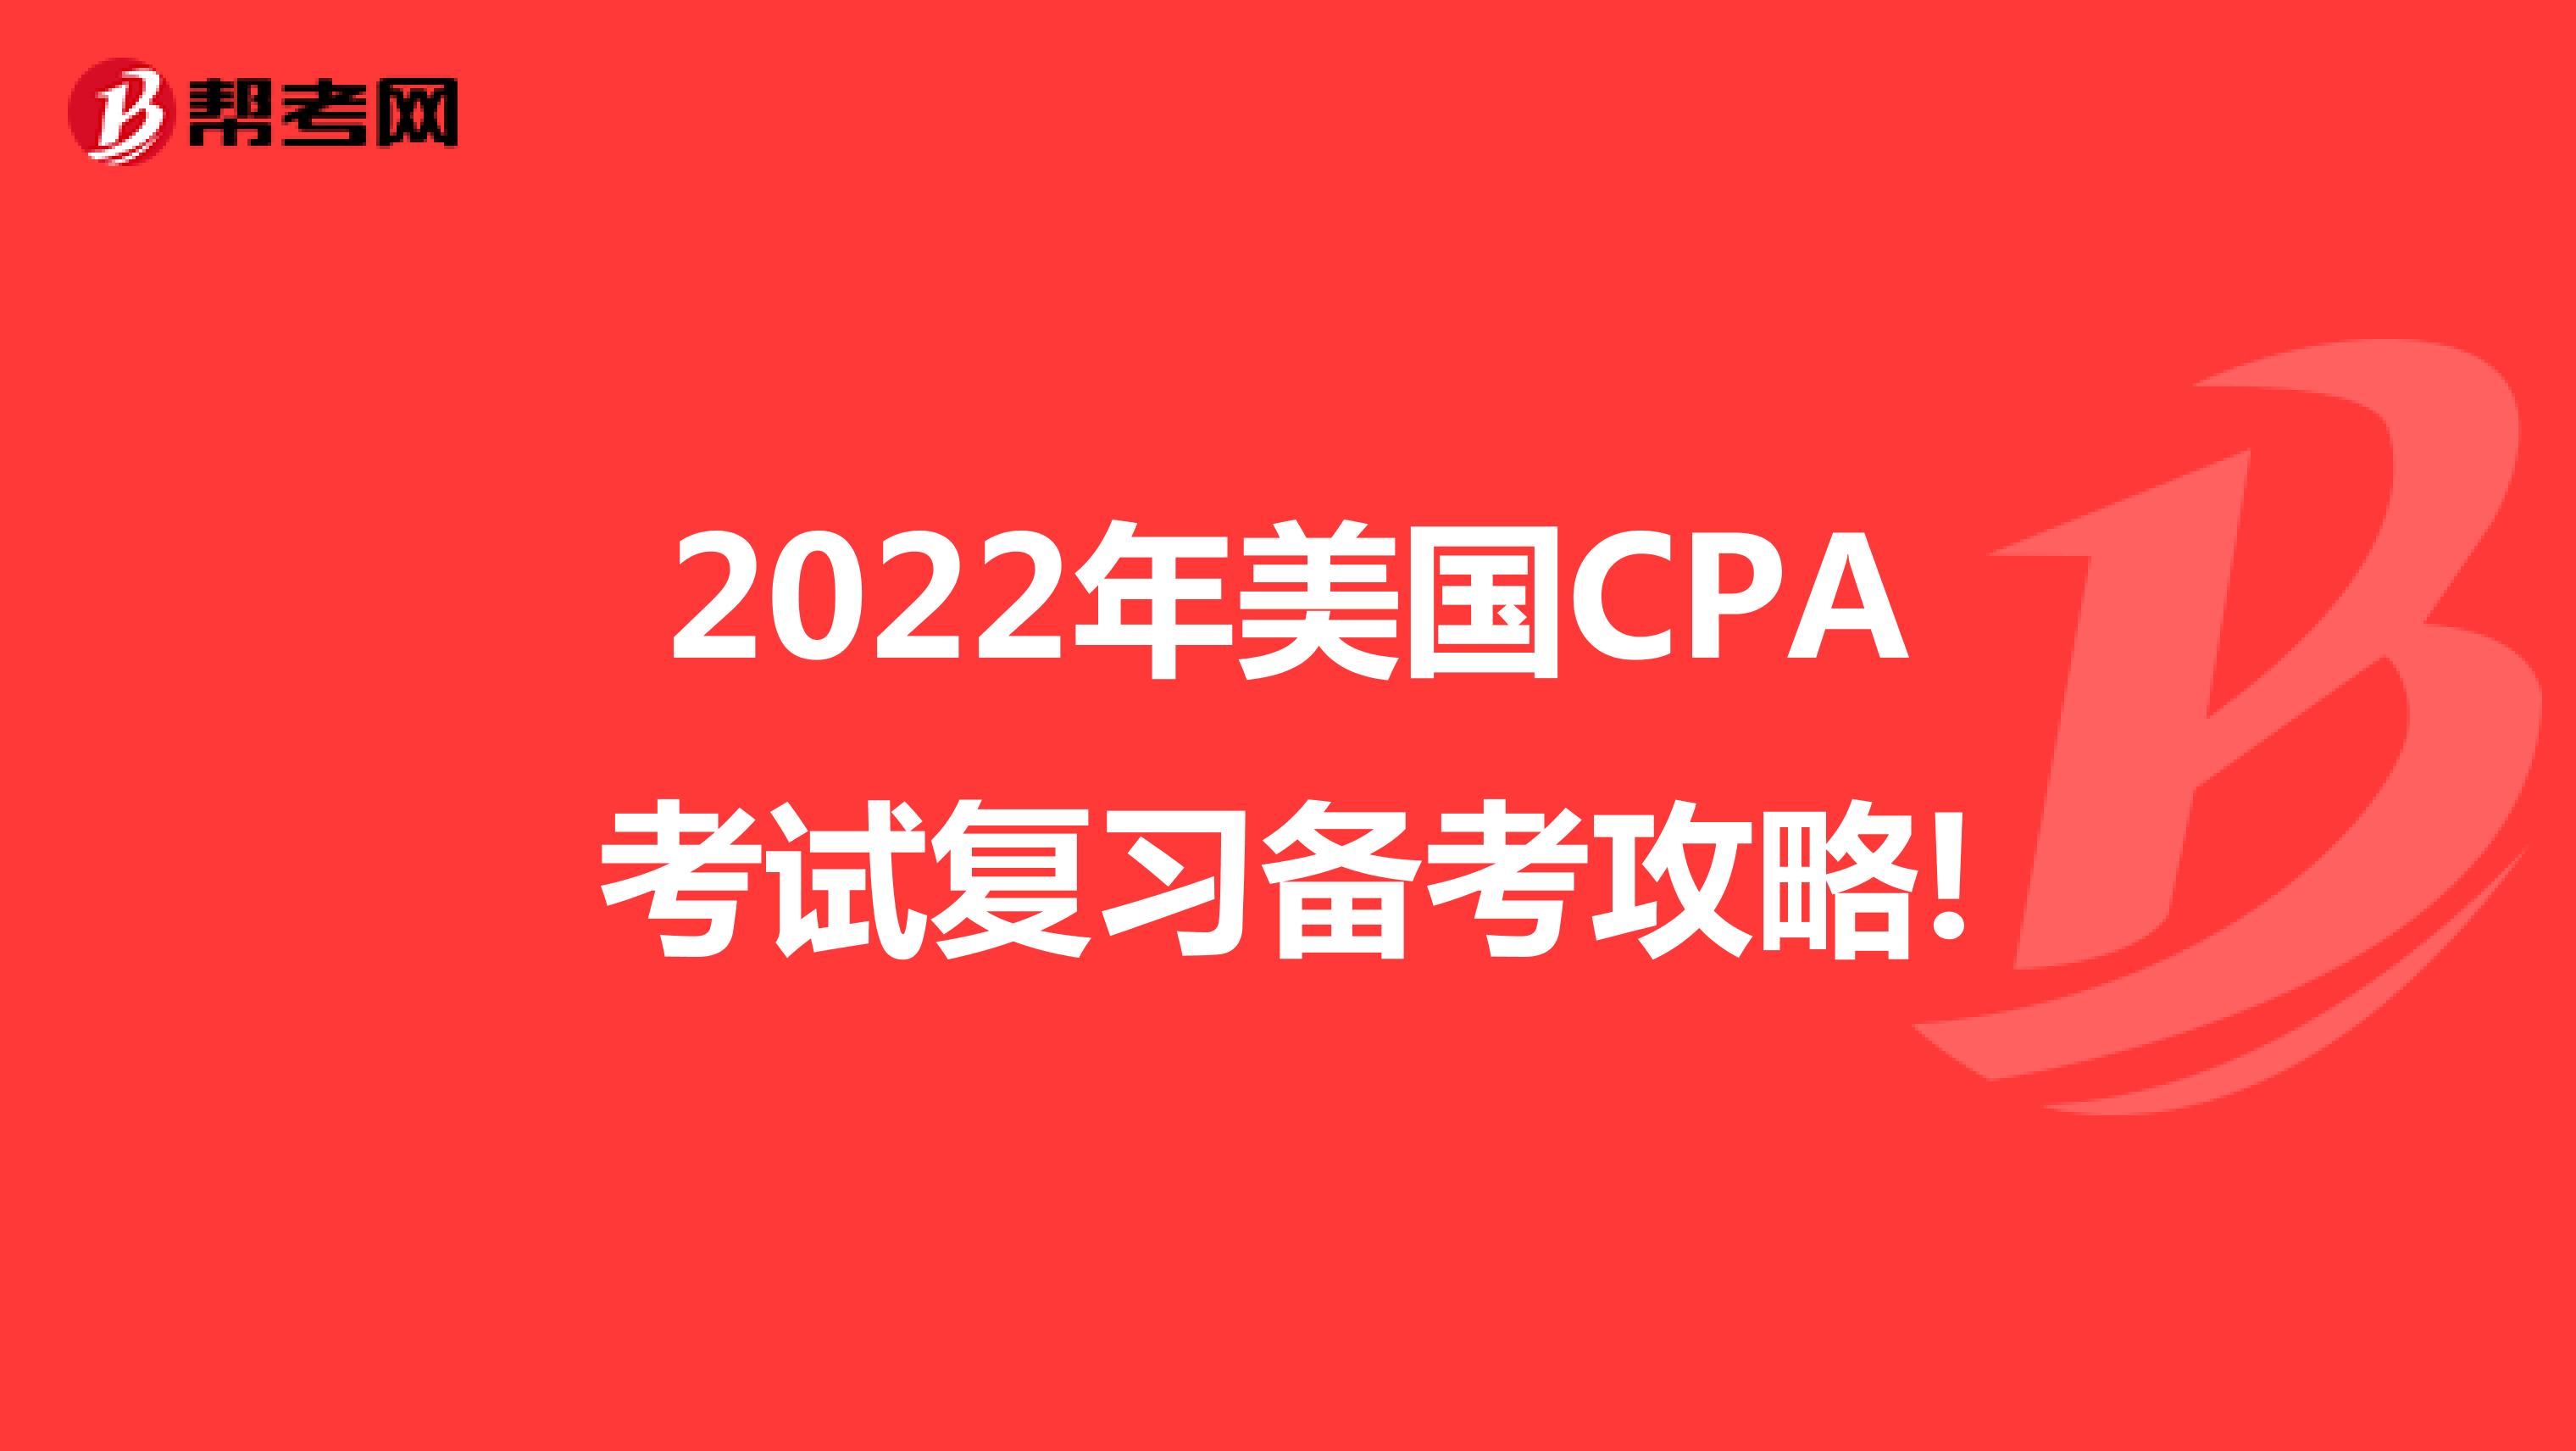 2022年美国CPA考试复习备考攻略!